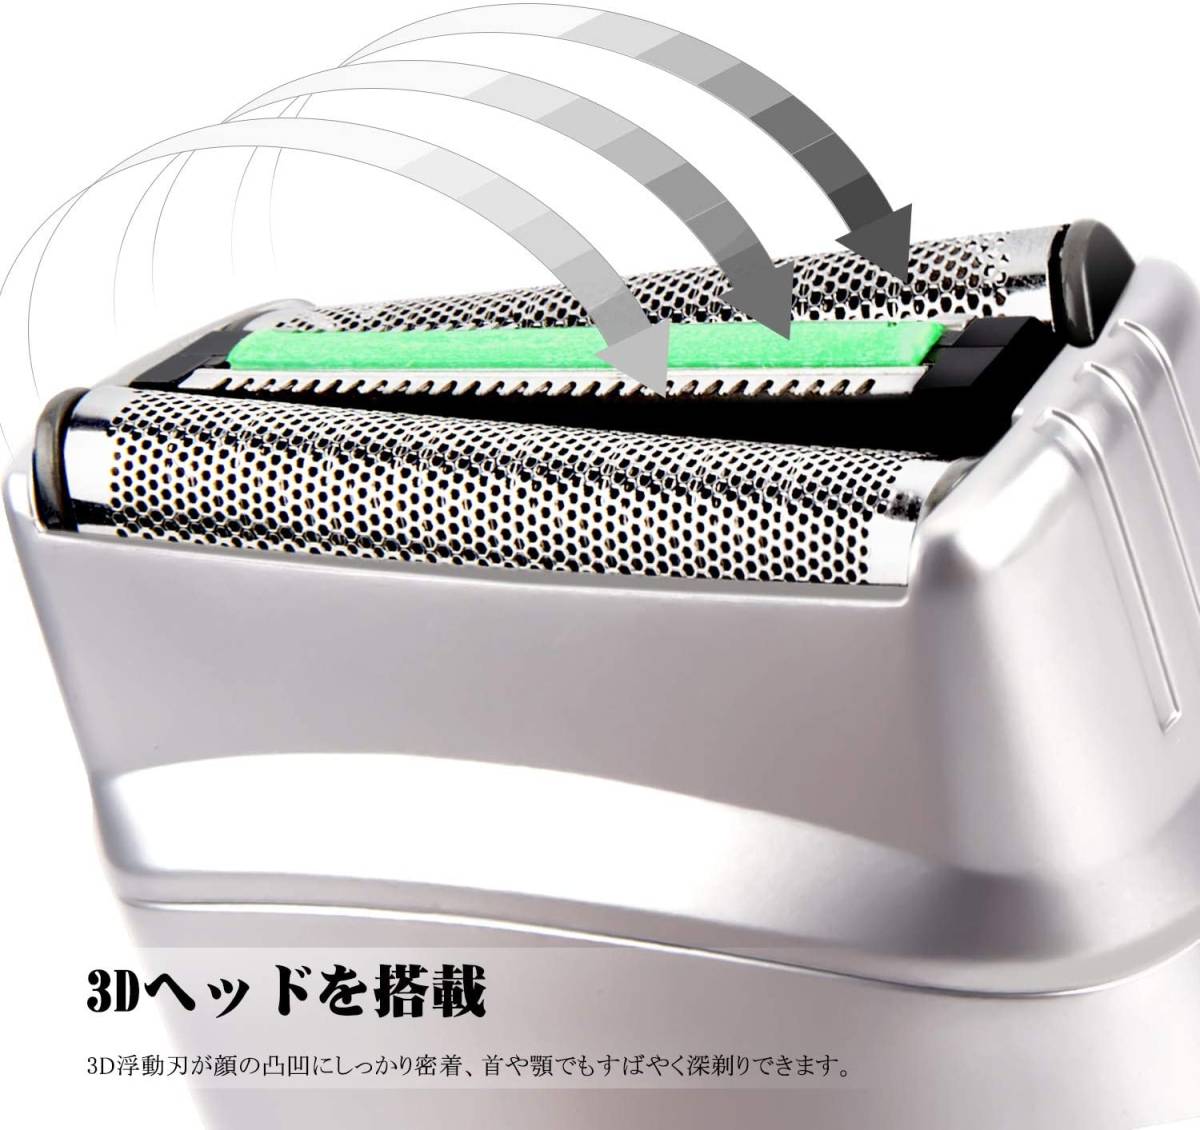 「-G5」アポセン 電気シェーバー メンズシェーバー 多機能ひげそり 往復式 カミソリ LEDディスプレー USB充電式 水洗い可 乾湿両用_画像4